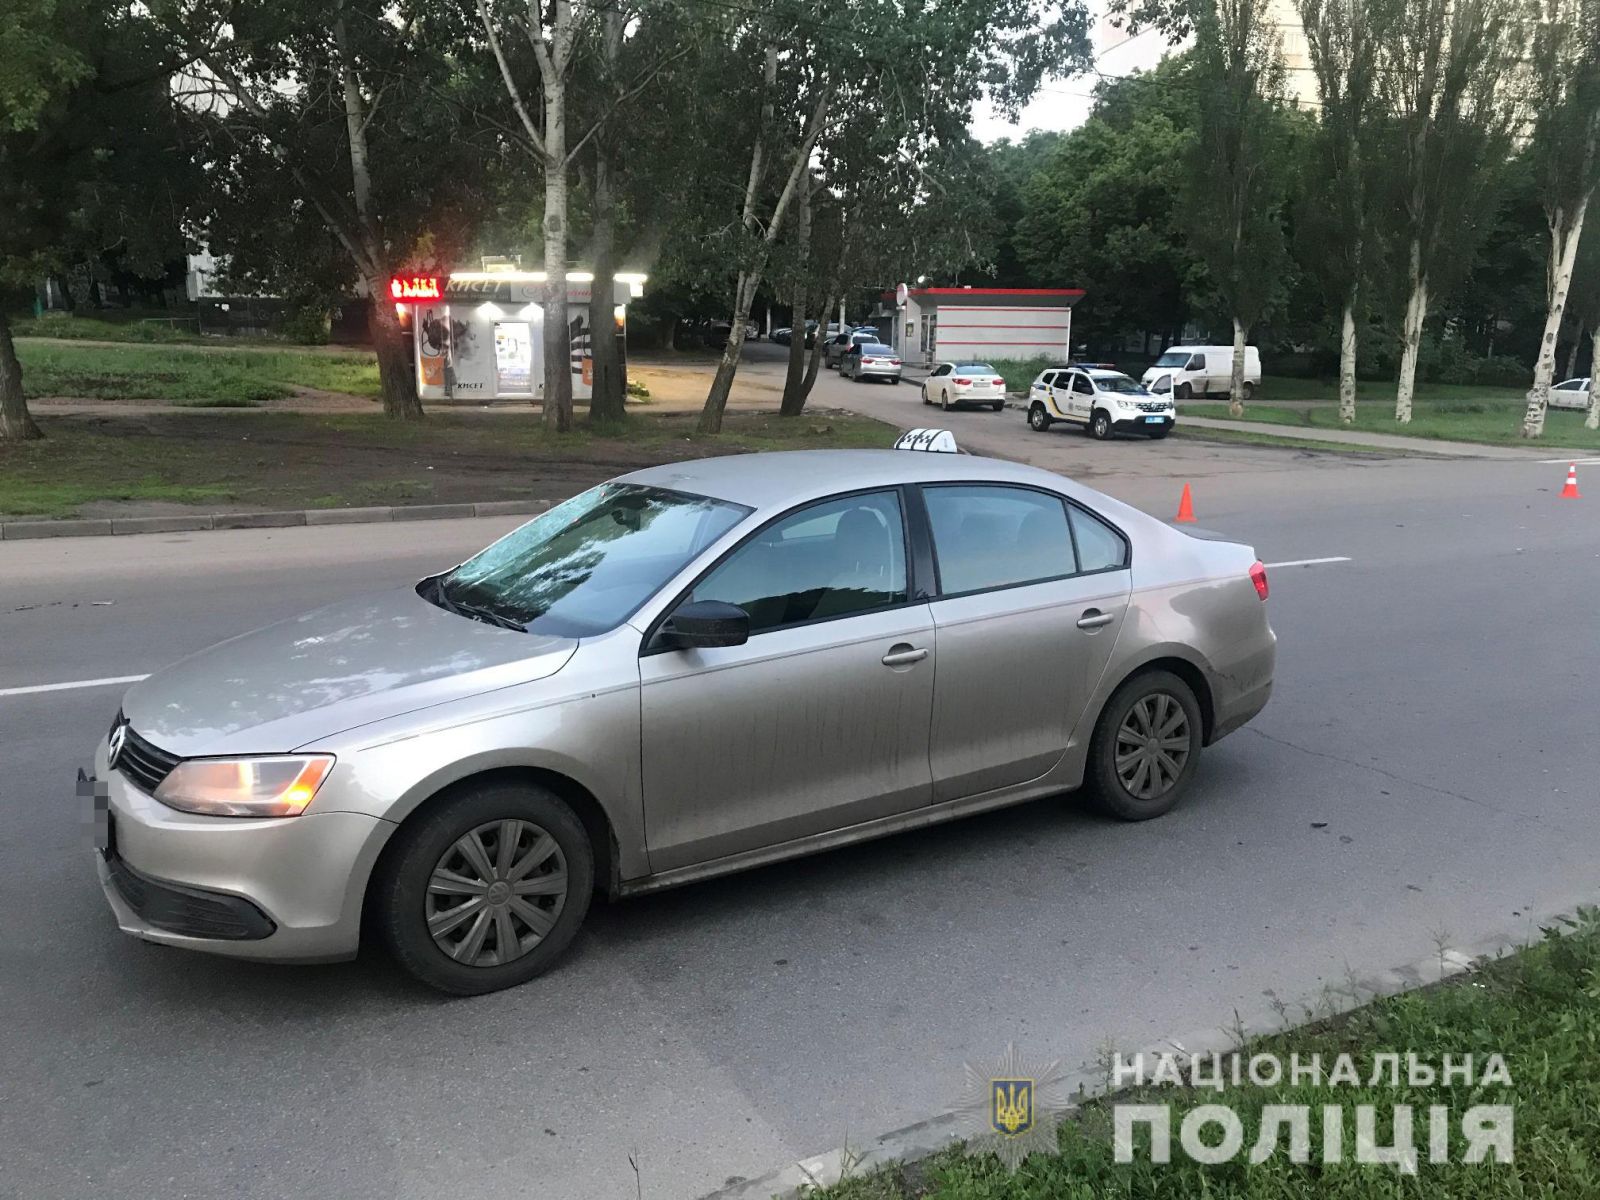 ДТП Харьков: Разыскиваются очевидцы ночной аварии в Харькове